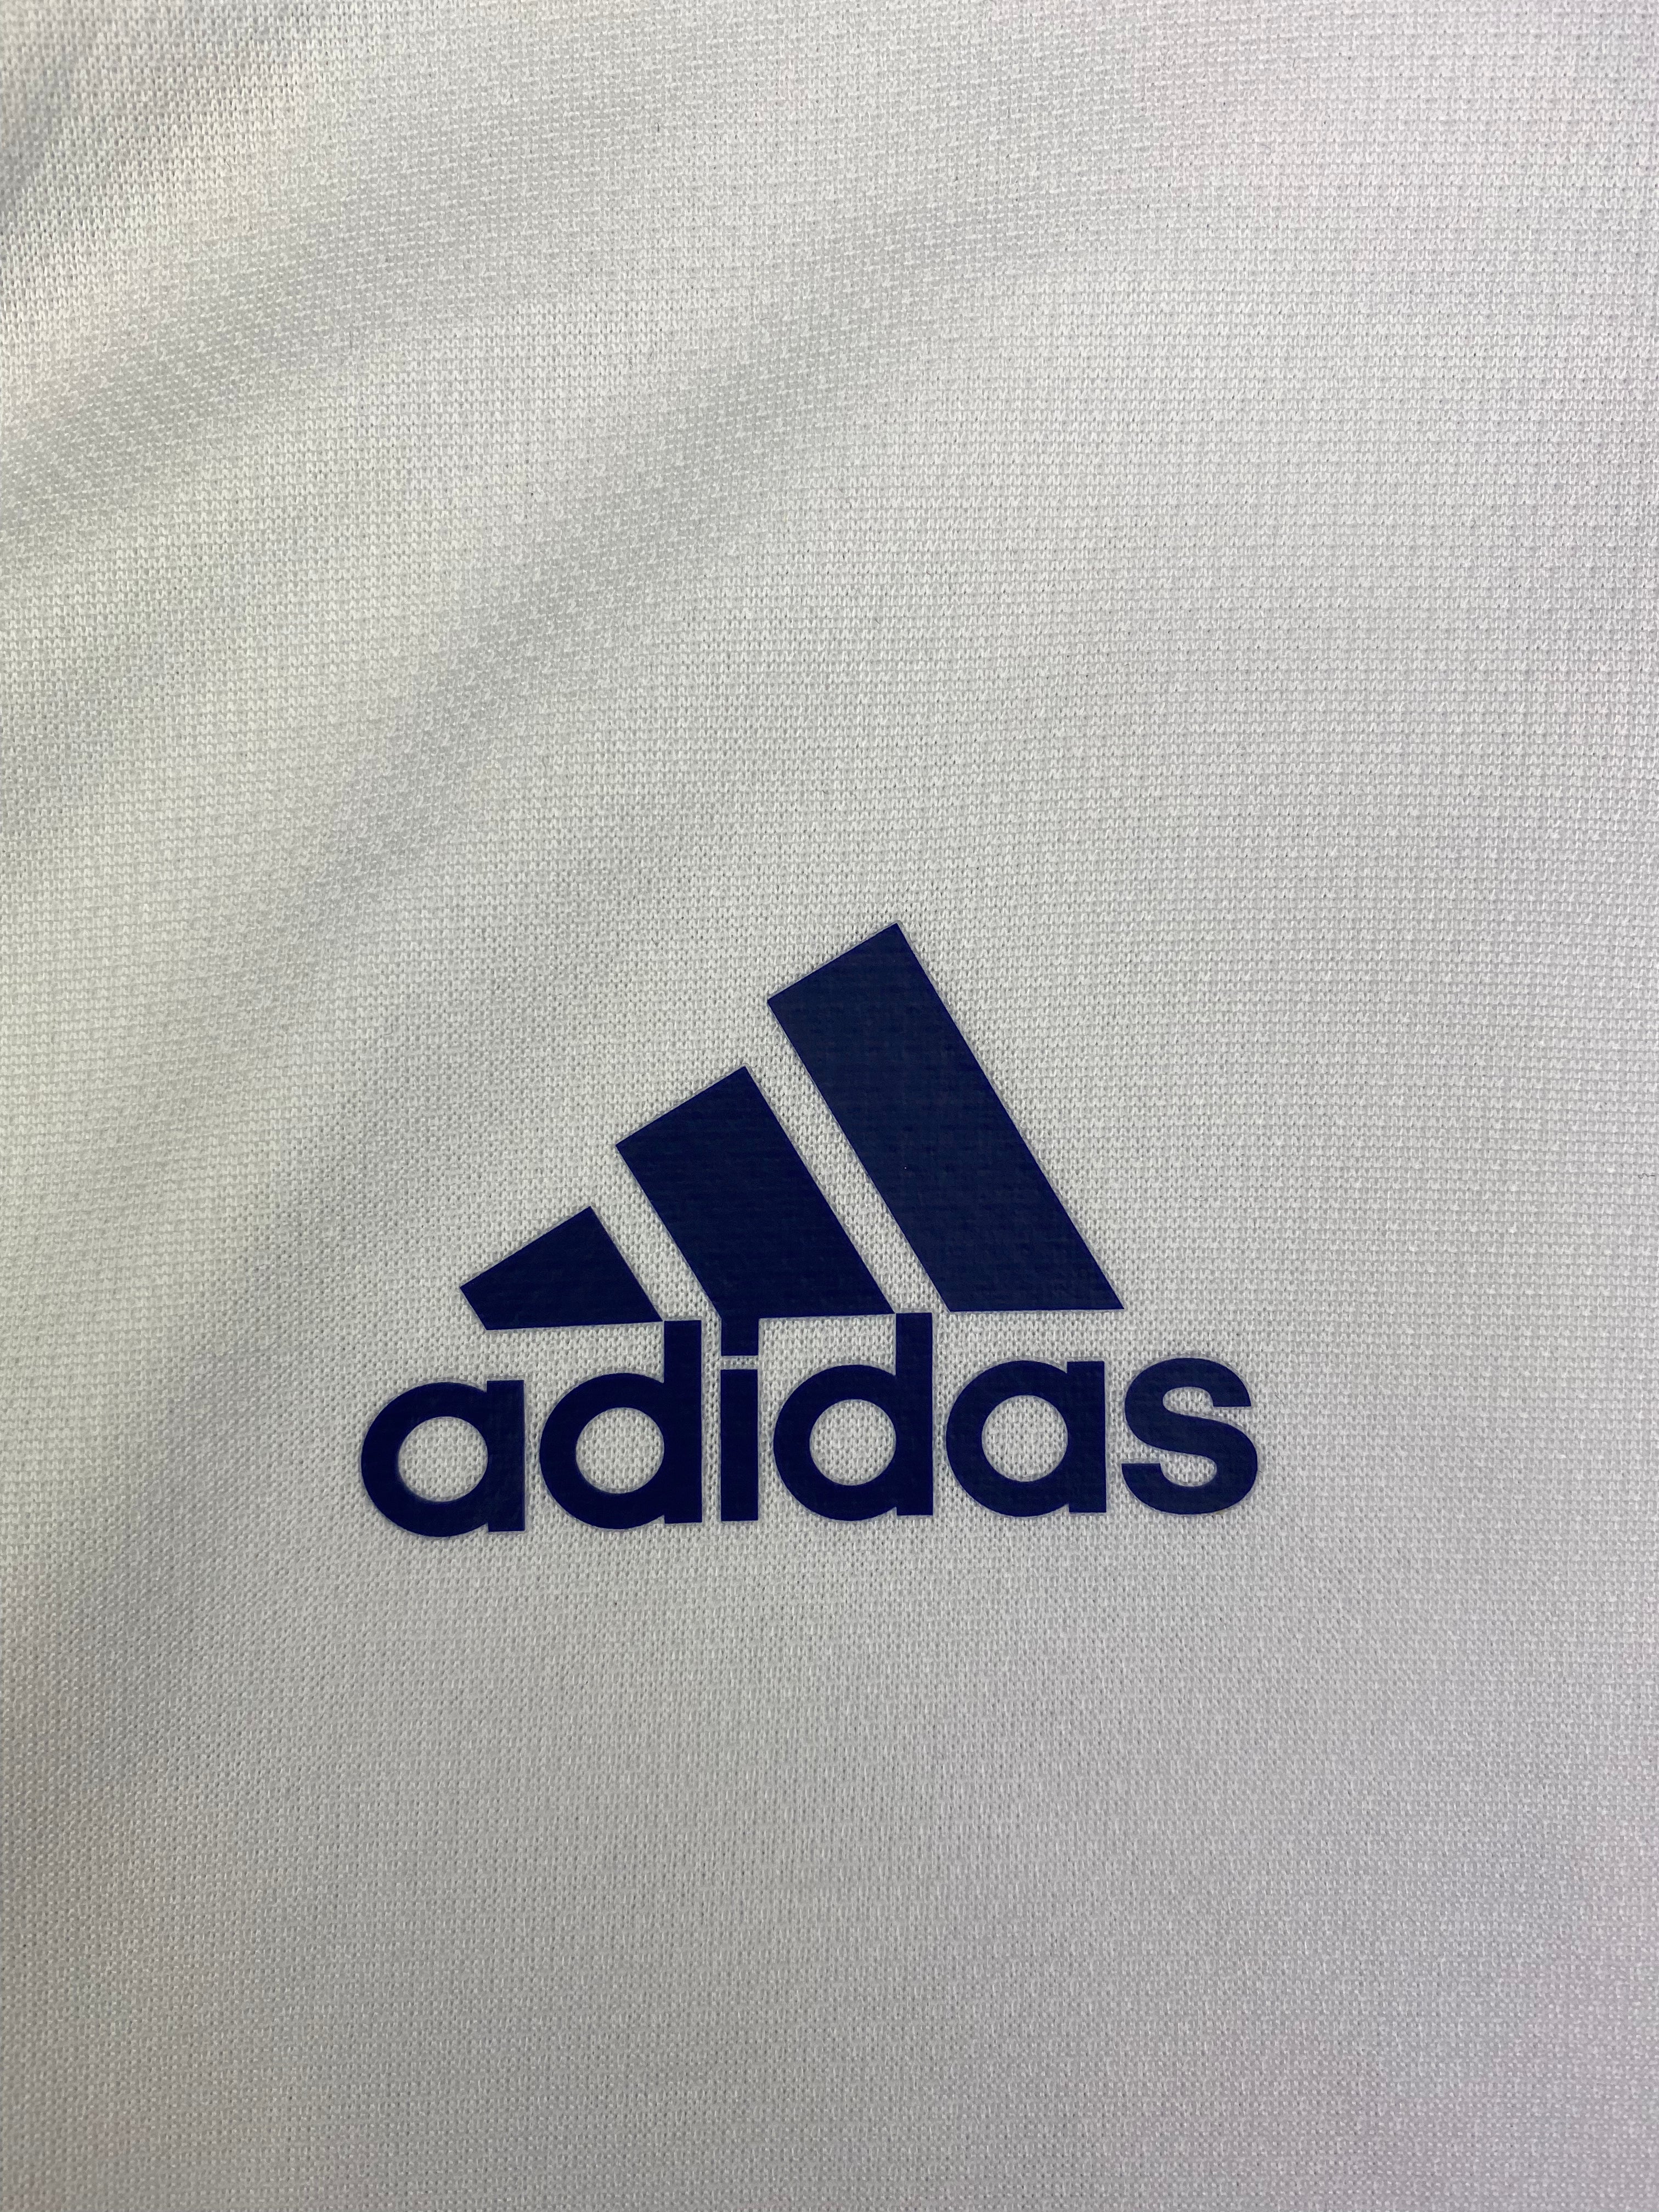 2014 Real Salt Lake Sample Away Shirt (M) 10/10